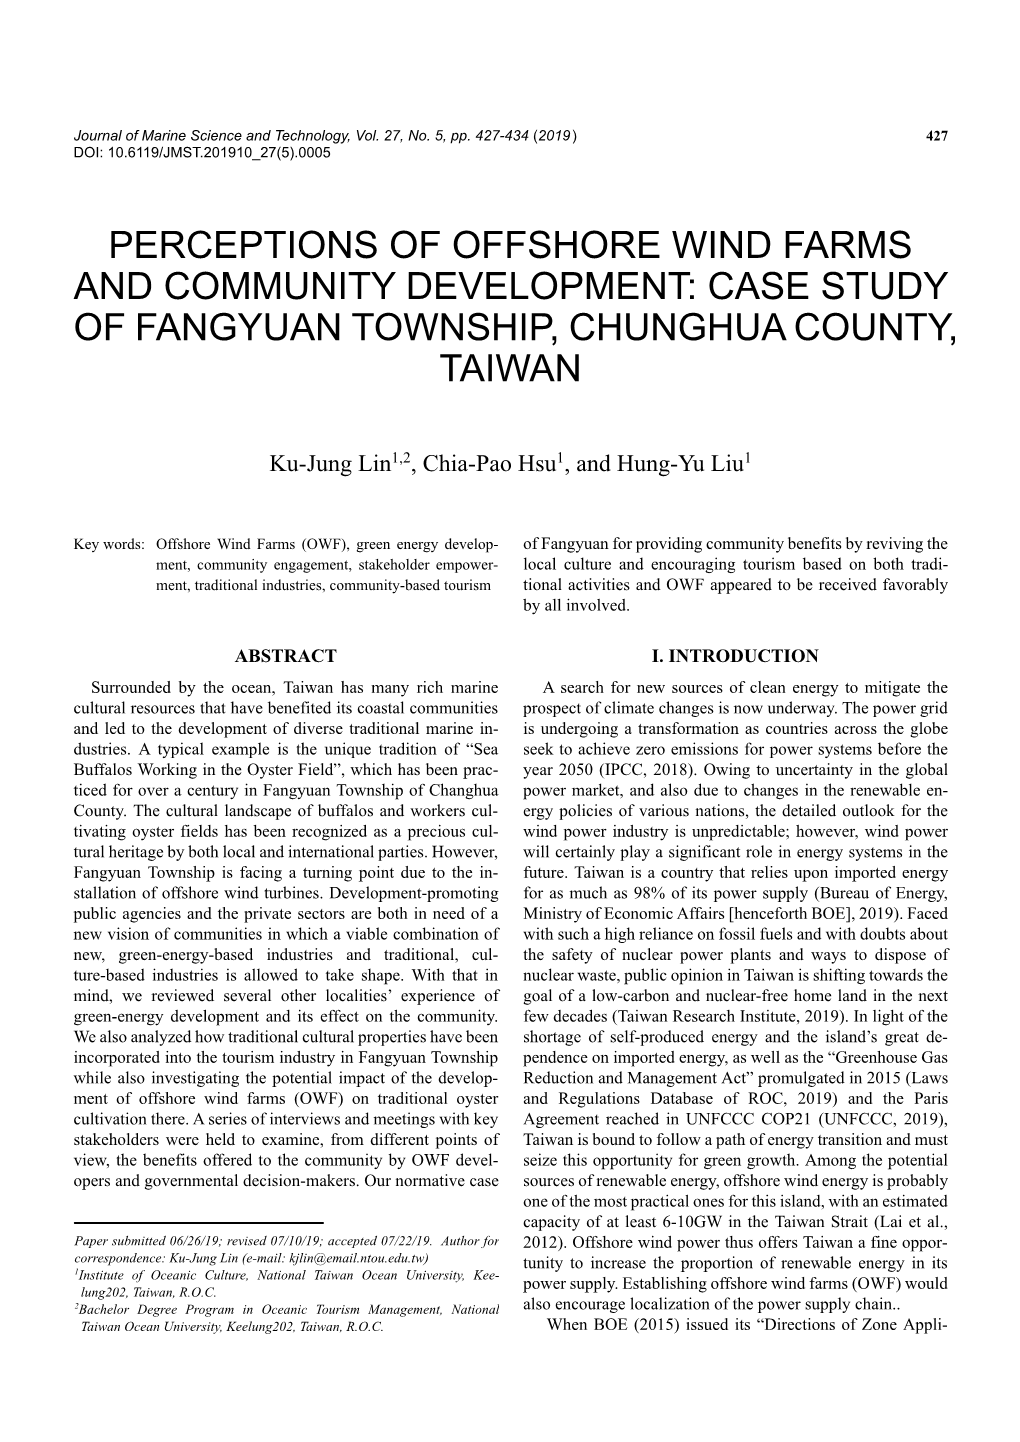 Case Study of Fangyuan Township, Chunghua County, Taiwan